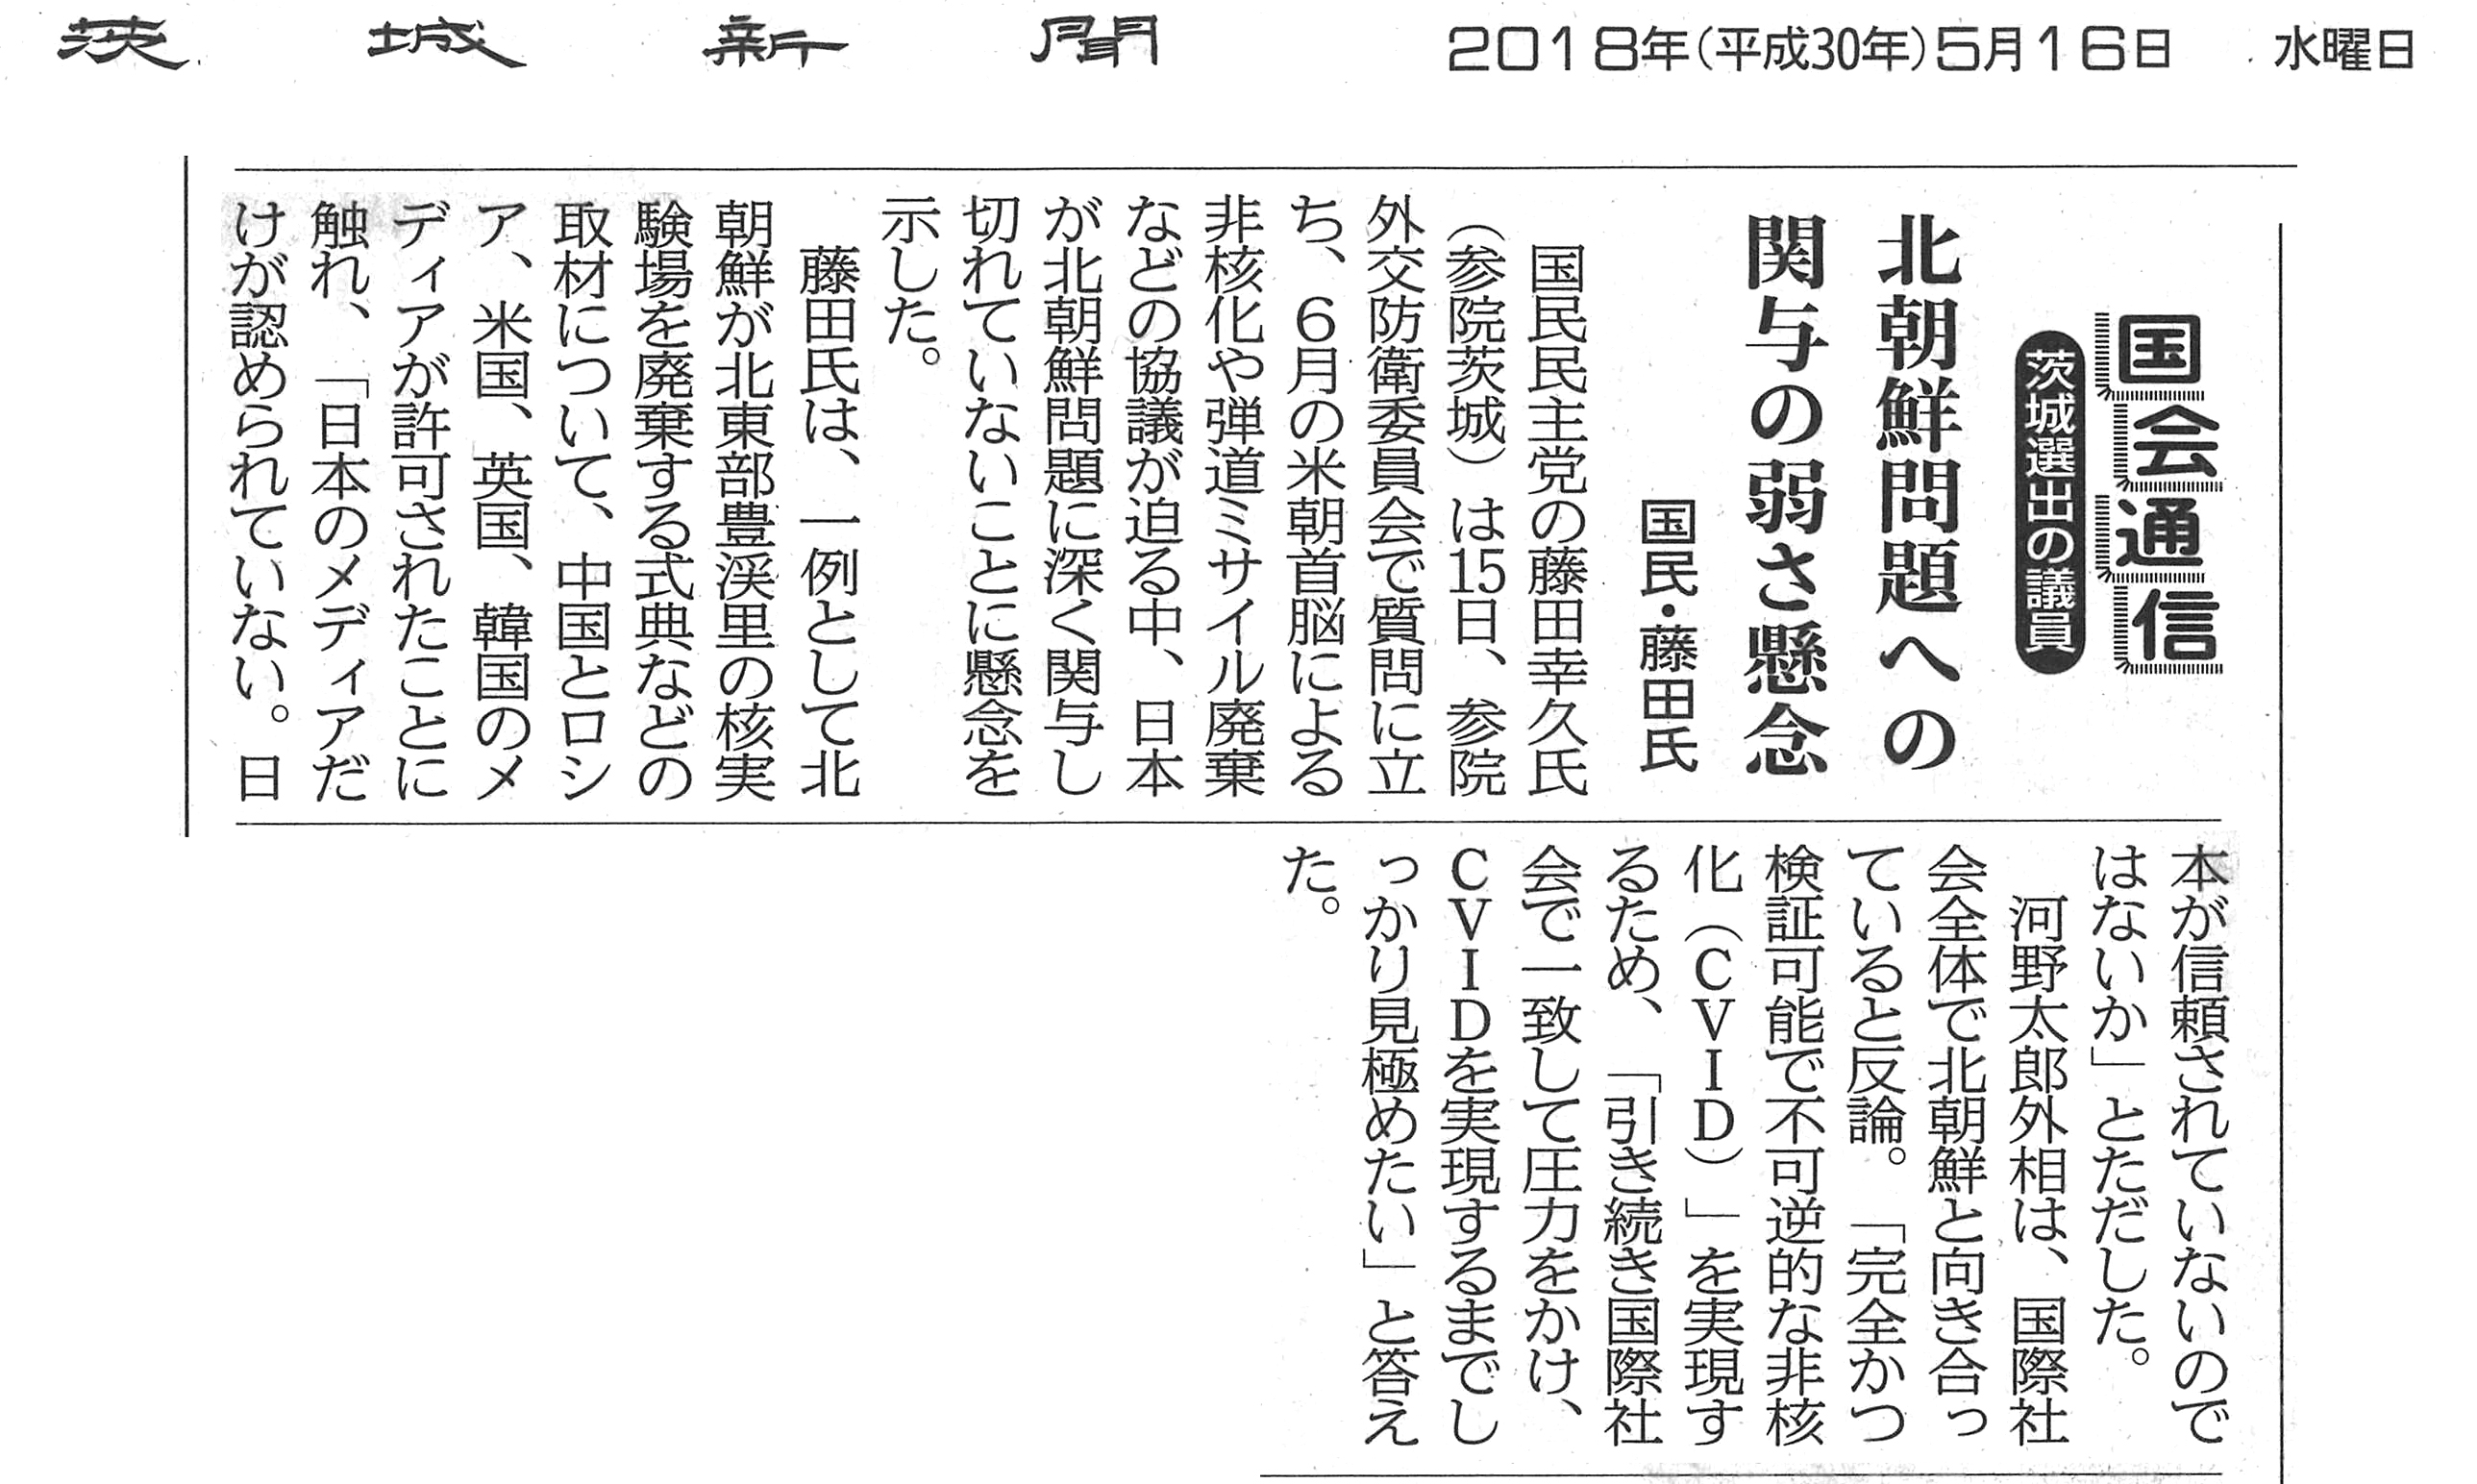 【茨城新聞】北朝鮮問題への関与の弱さ懸念